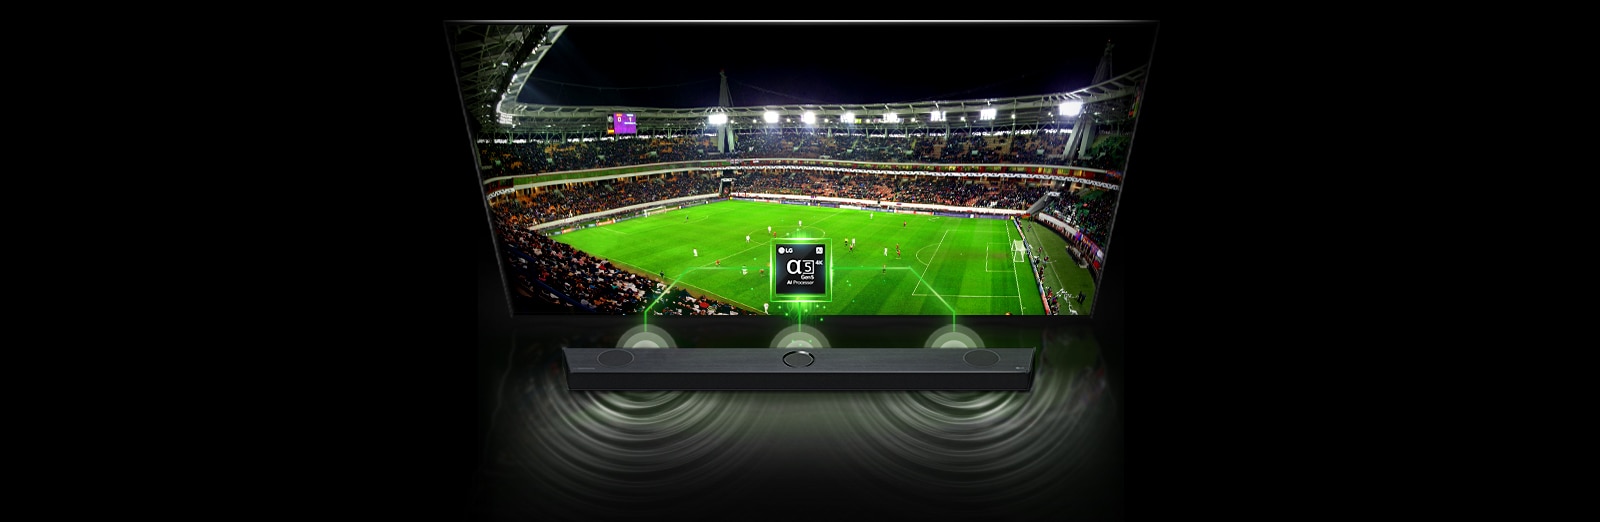 TV'de "Alpha 5 Chip" görüntüsü ve hemen altında bir ses çubuğu vardır. TV’de futbol stadyumunun ekranı, kumsalda gün batımında yürüyen kadın ve konser salonu arka arkaya gösterilir. Soundbar'da ise ses dalgası efekti ve renkler ekrana göre değişir.